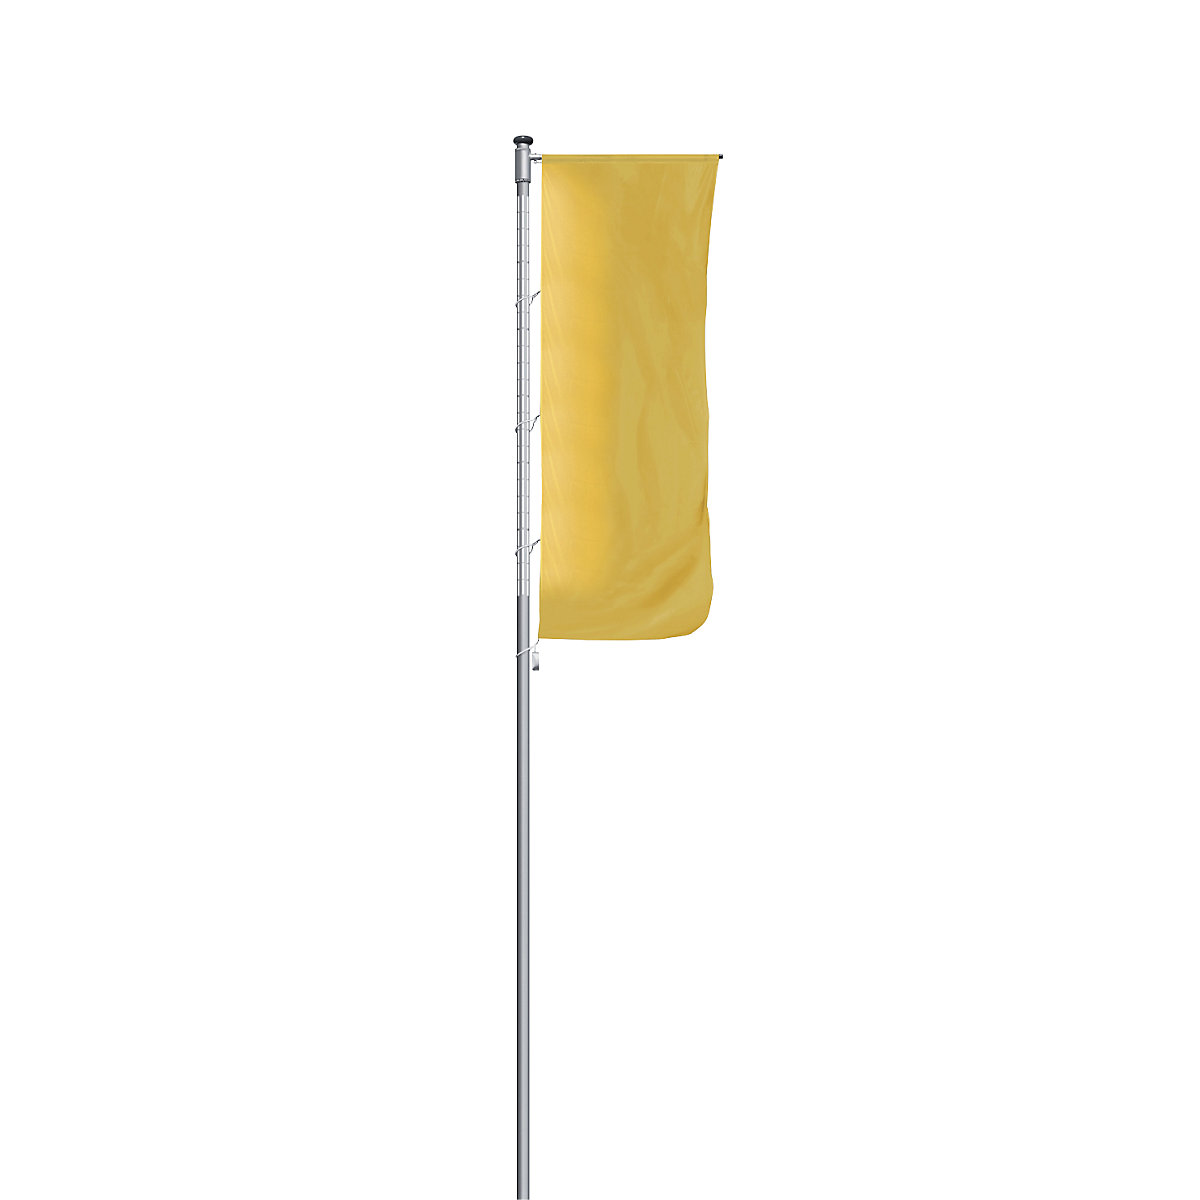 Aluminijski stup za zastave, osvijetljen – Mannus